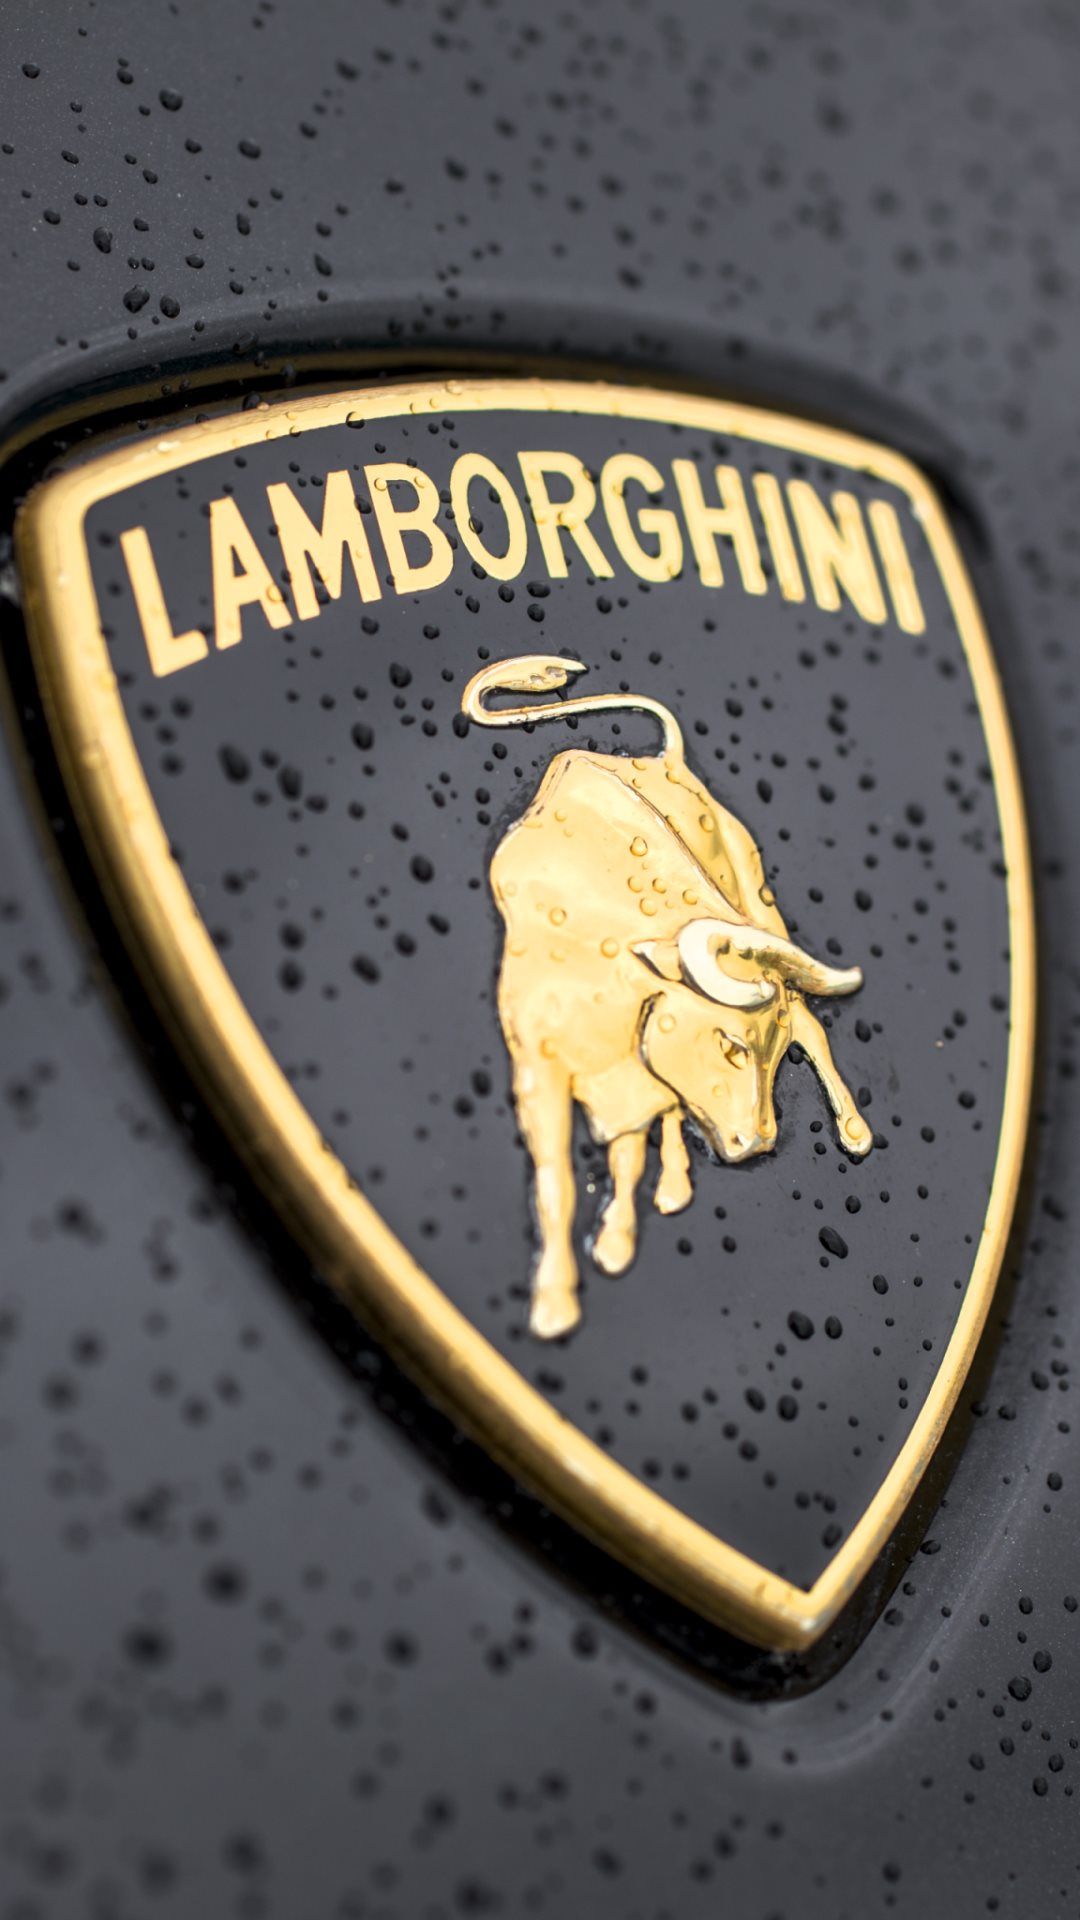 Lamborghini Logo Close Up iPhone Wallpaper